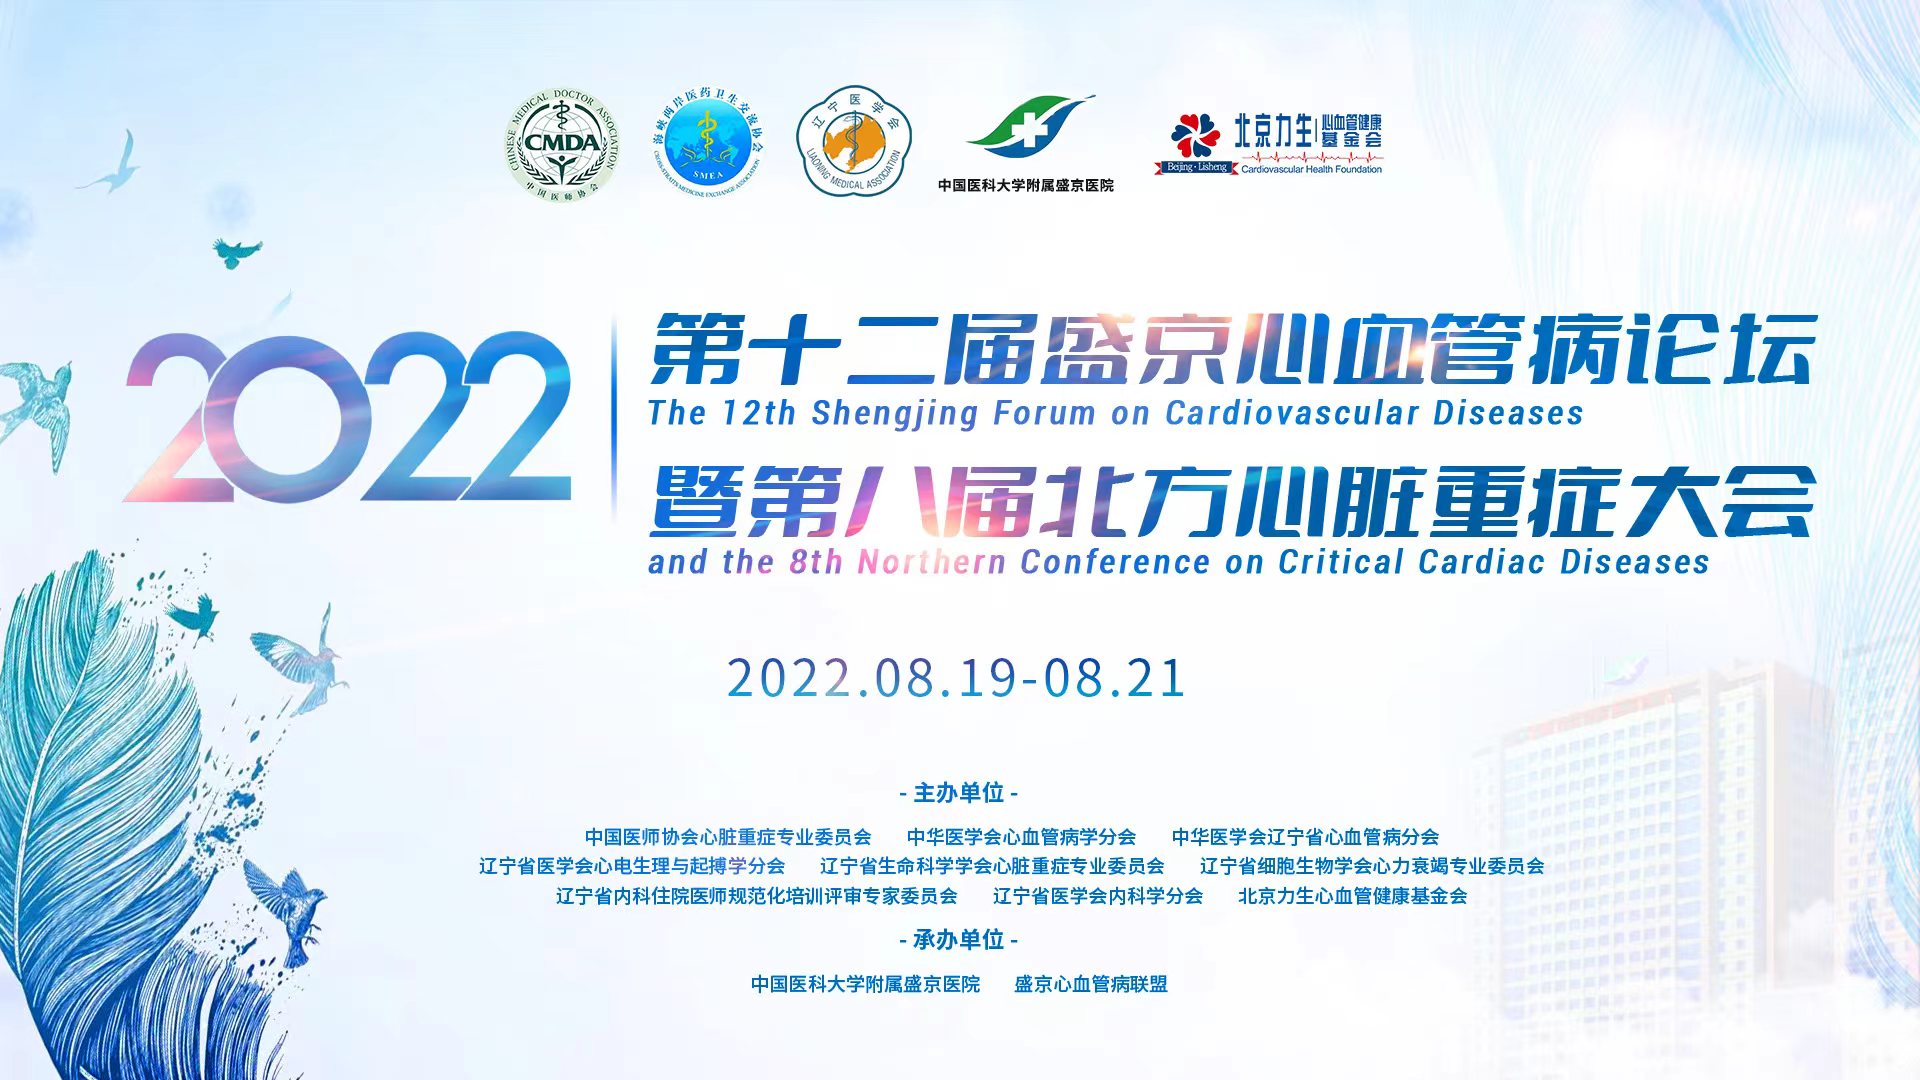 第十二届盛京心血管病论坛(2022)暨第八届北方心脏重症大会